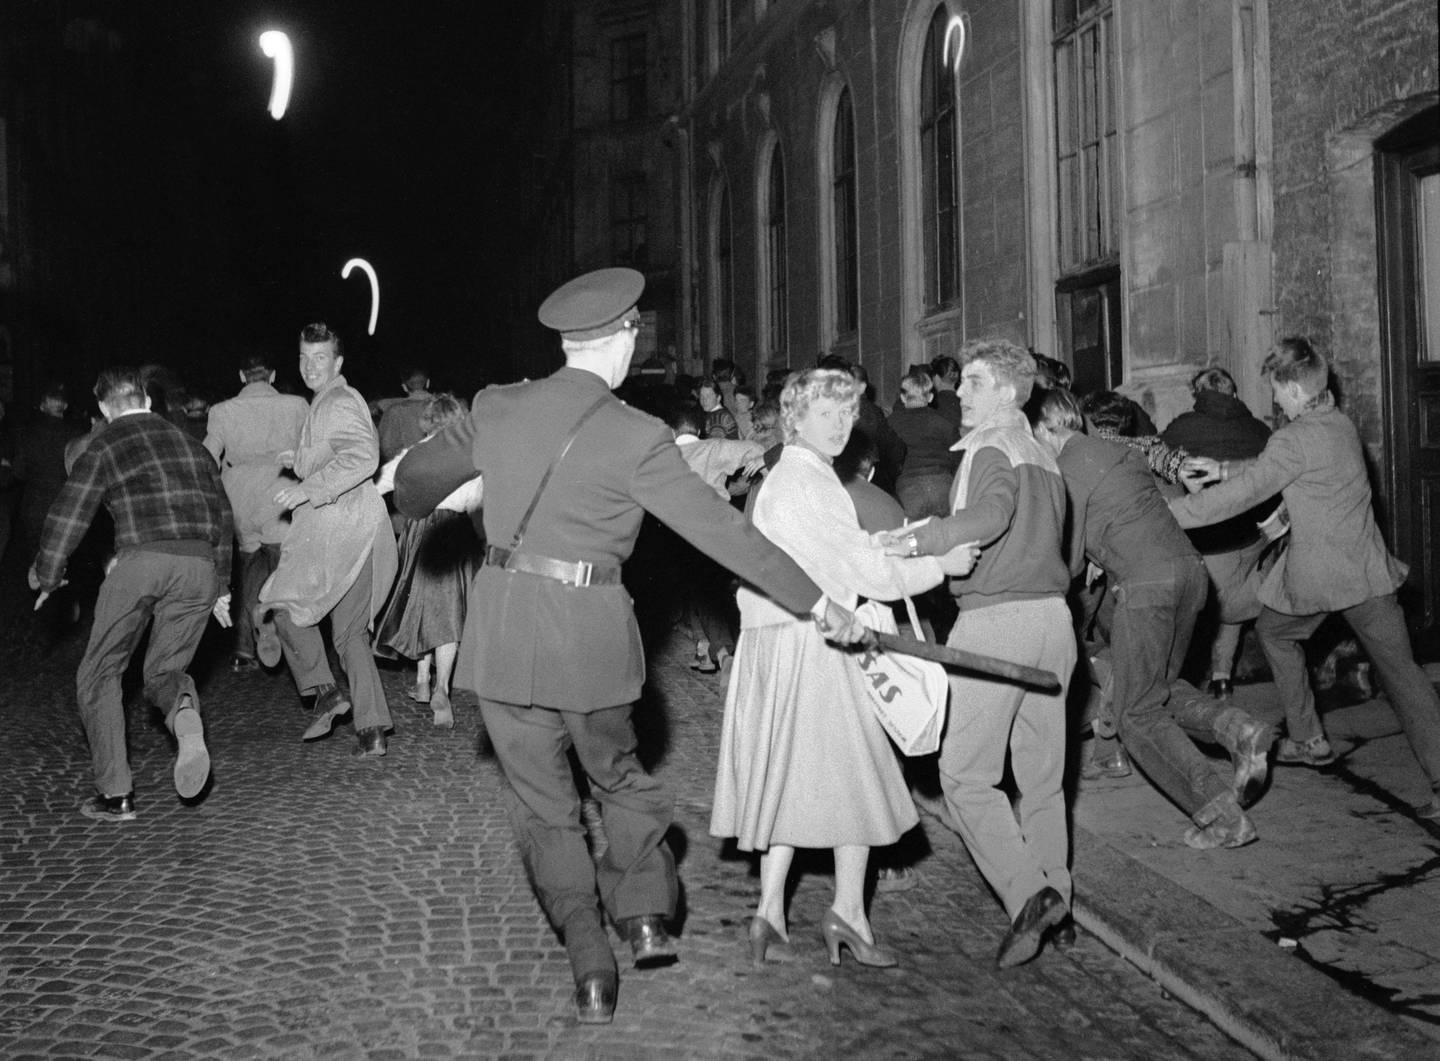 Politi jager ungdom etter visning av filmen "Rock Around the Clock"  på Sentrum kino i 1956.